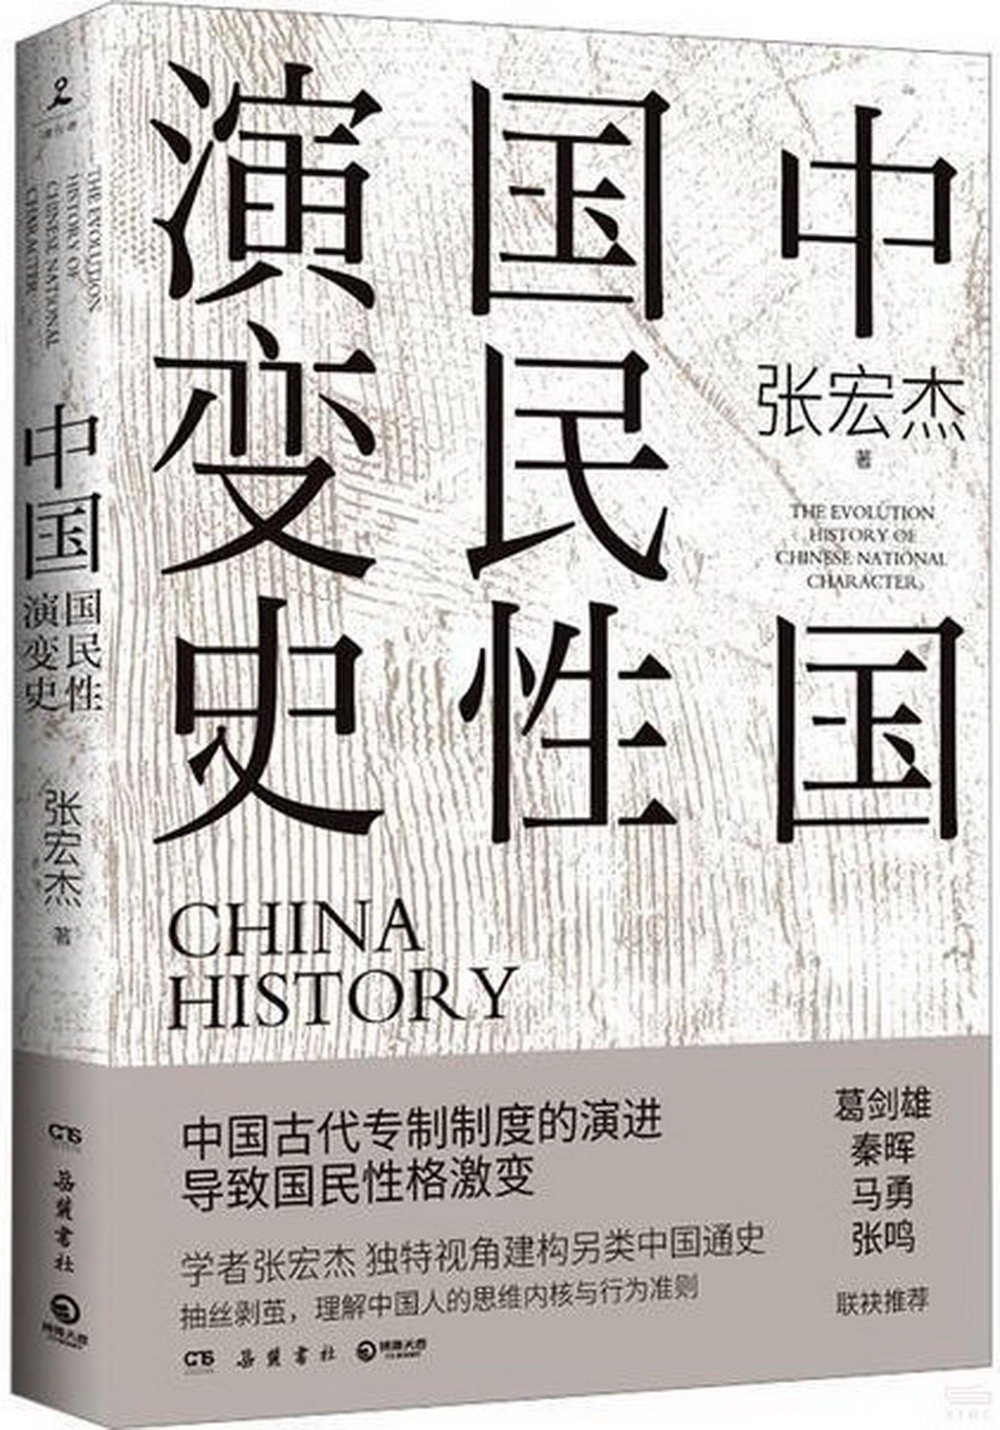 中國國民性演變史